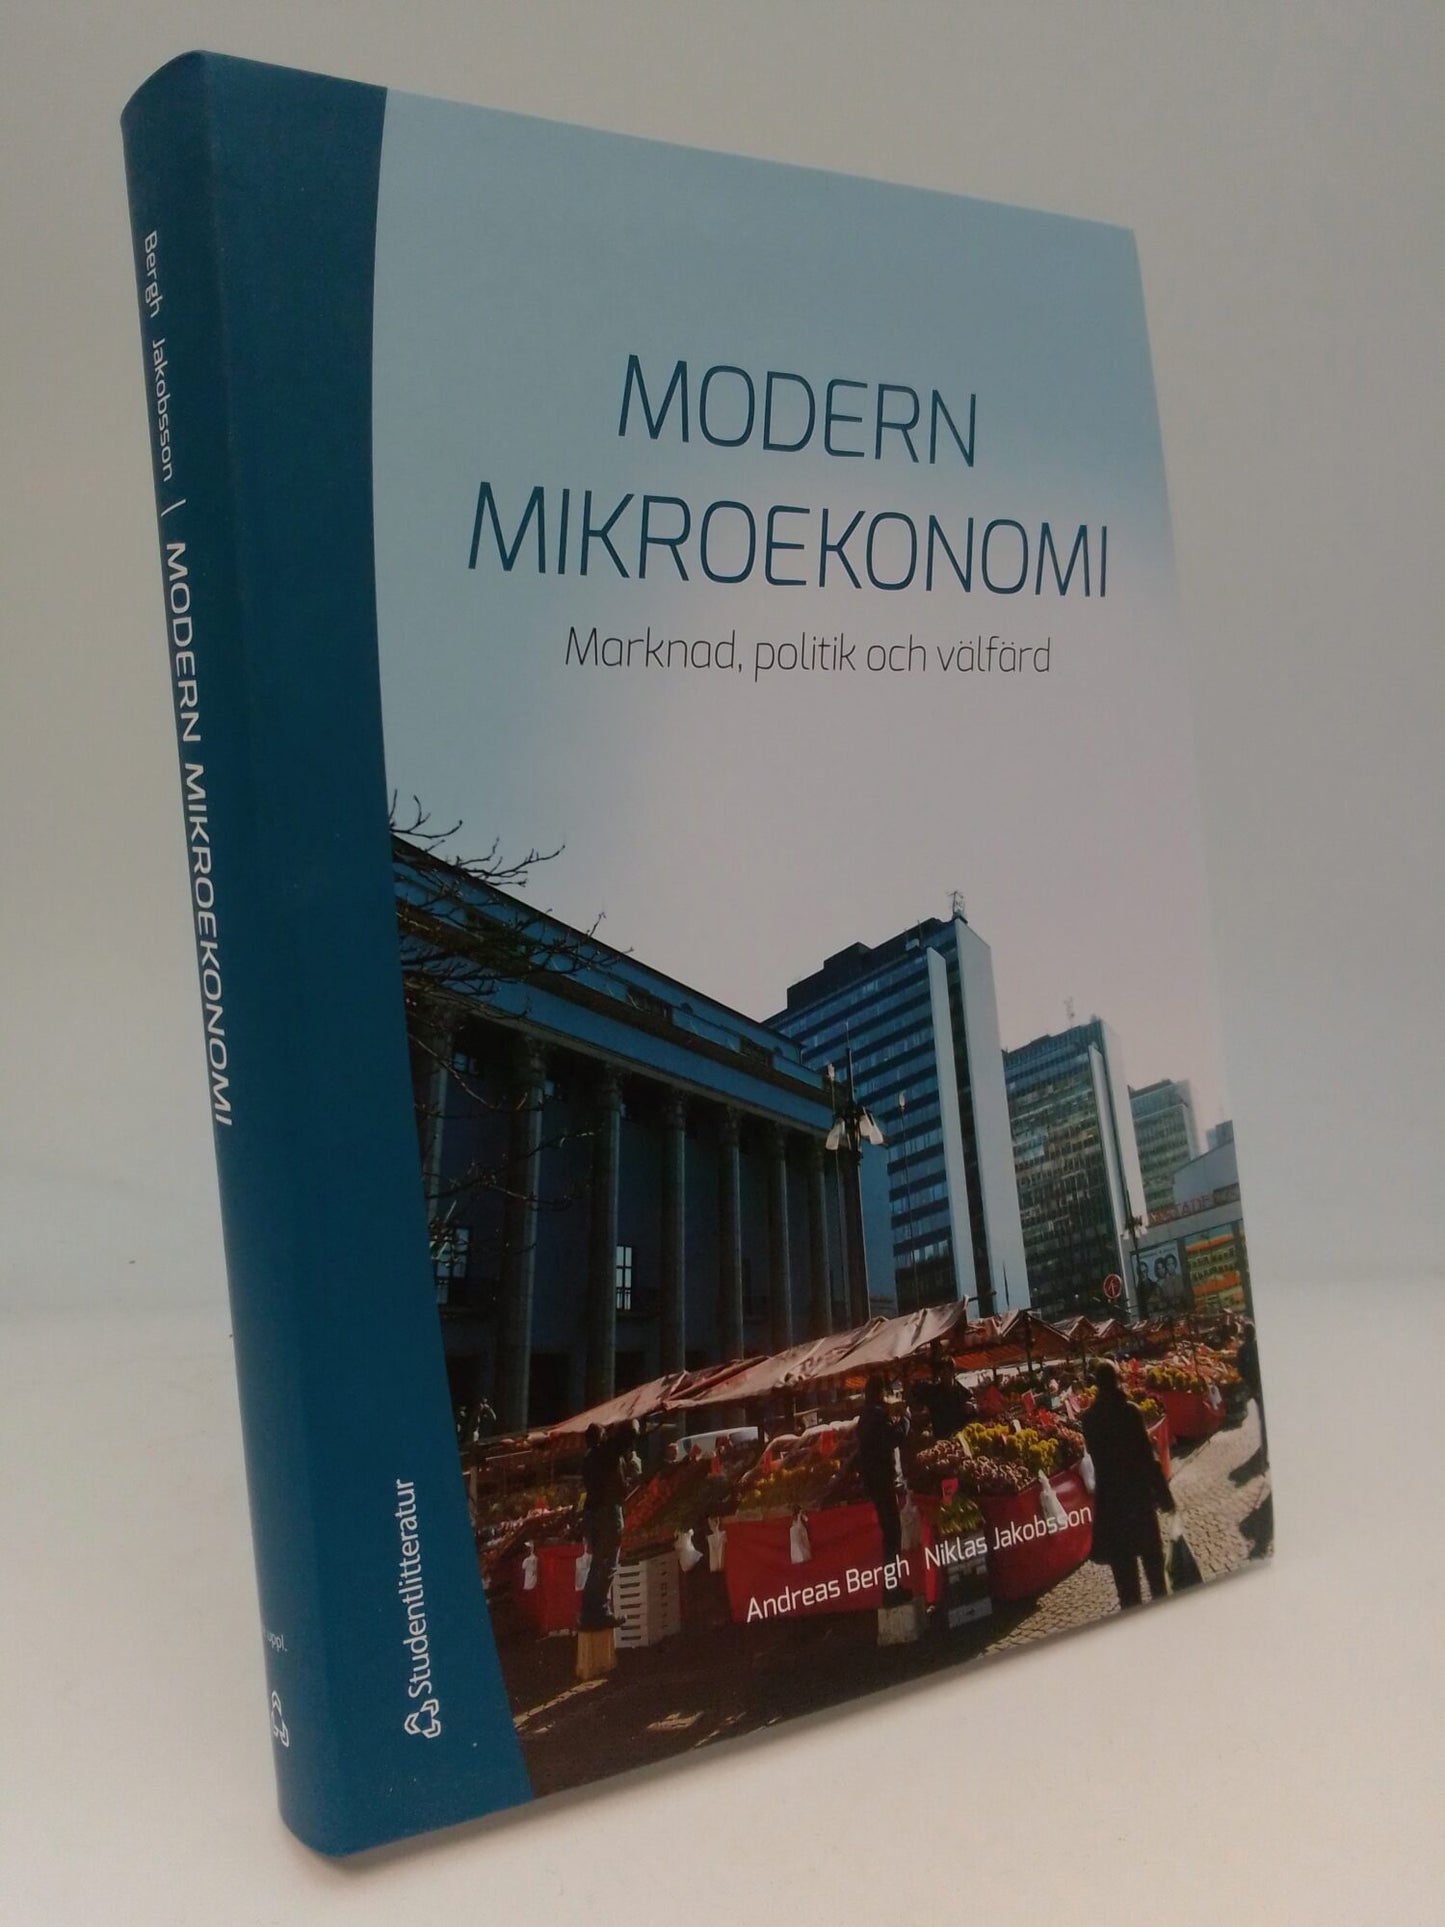 Bergh, Andreas | Jakobsson, Niklas | Modern mikroekonomi : Marknad, politik och välfärd